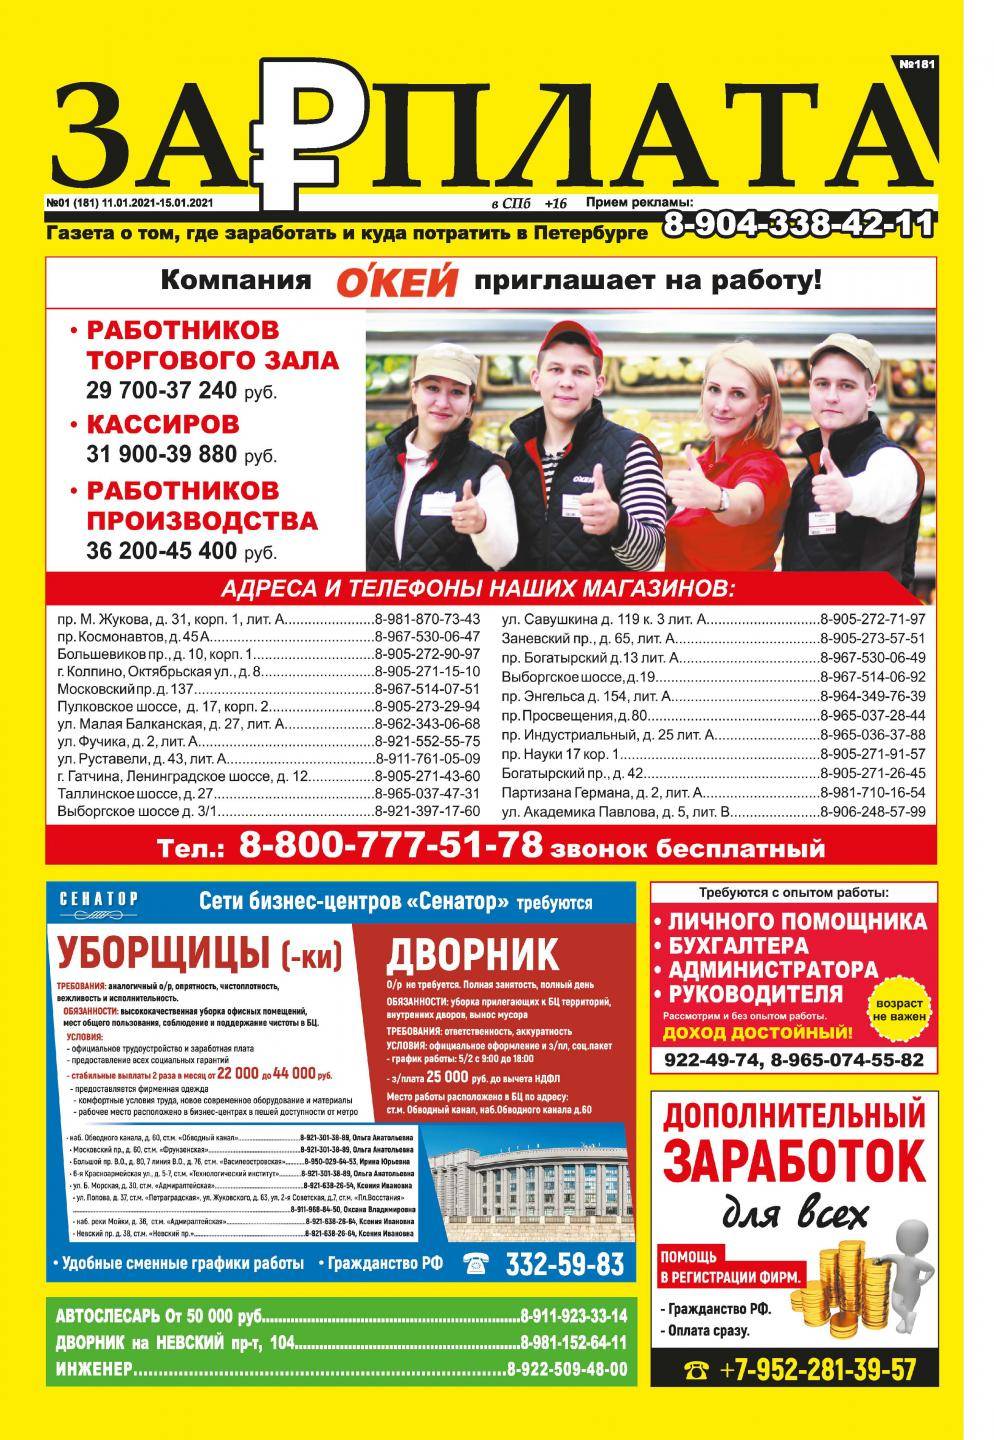 Объявление в газету Зарплата в СПб